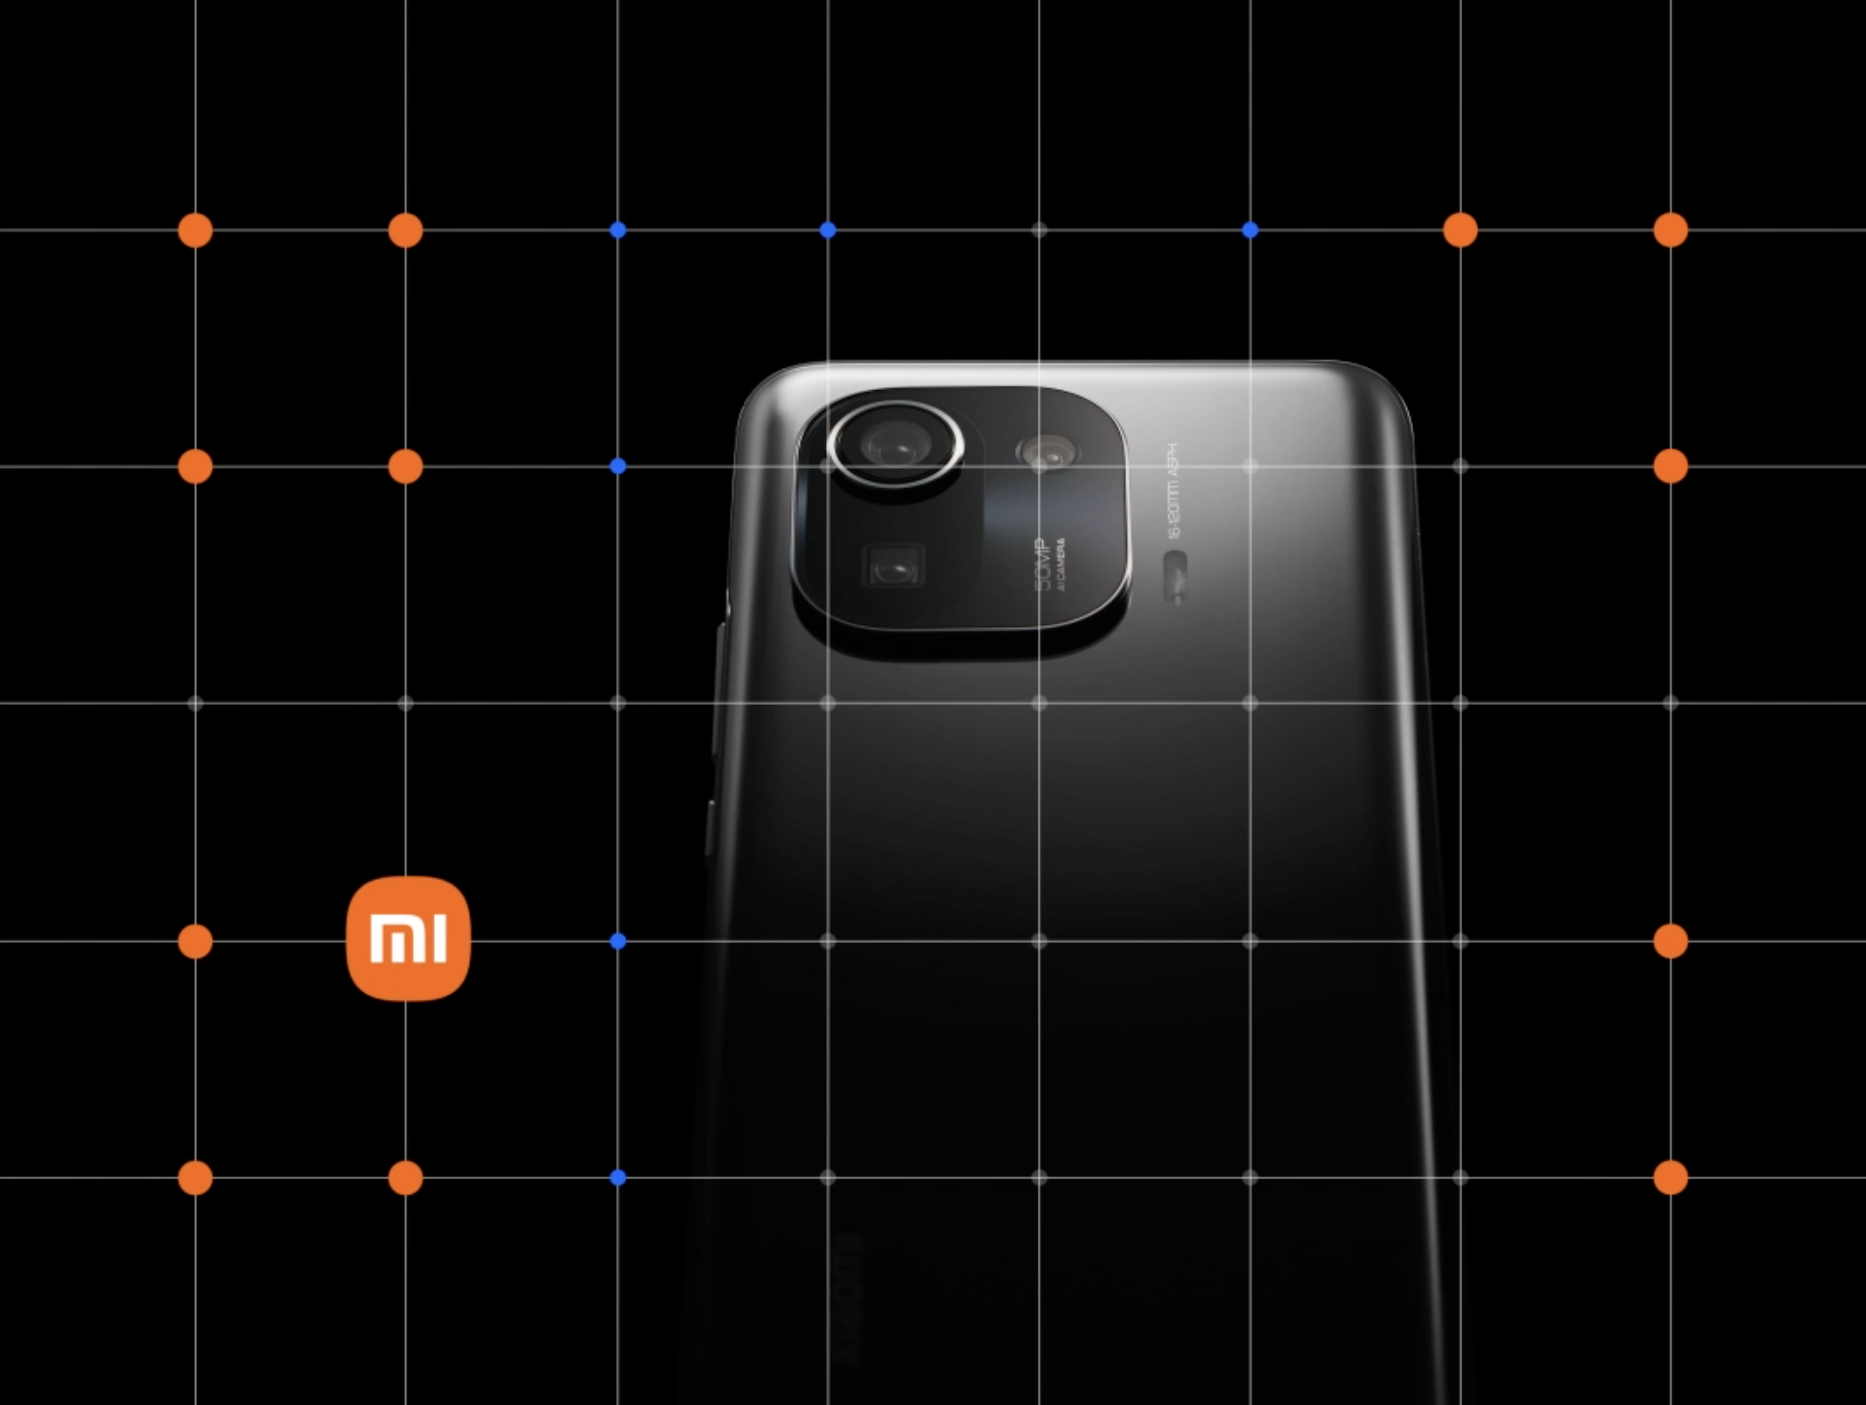 78878 - Smettere di litigare! Il nuovo logo realizzato da Xiaomi Mi 2 milioni è già fantastico!